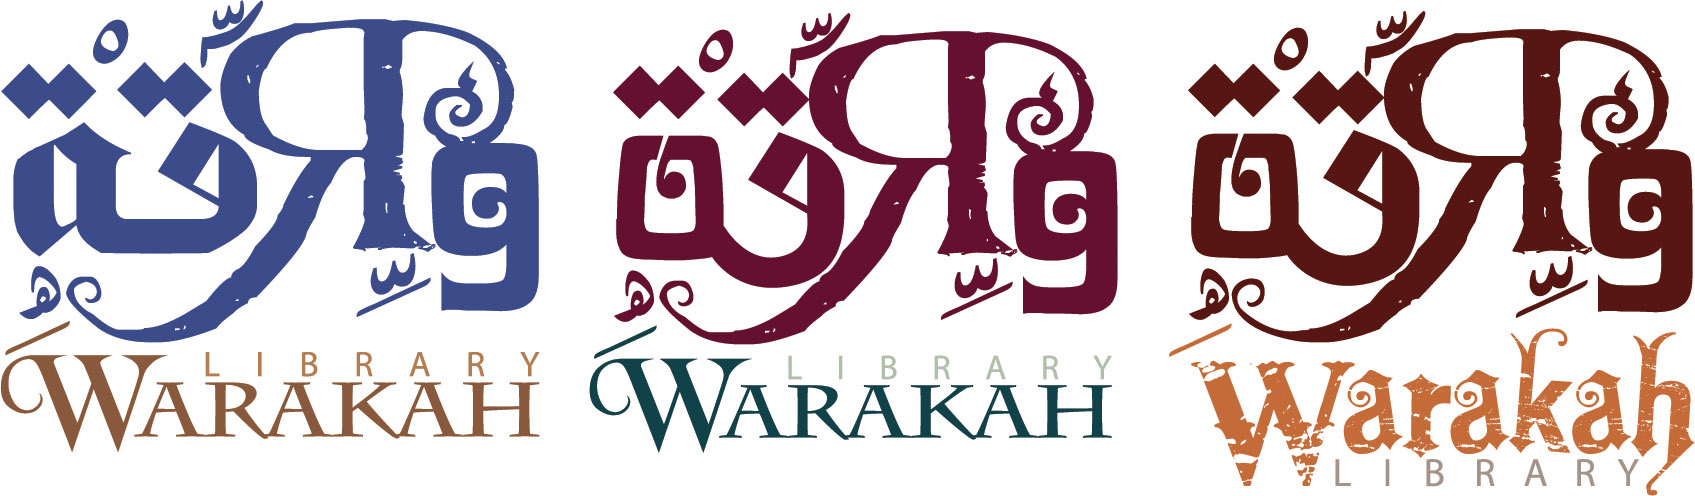 warakah logo